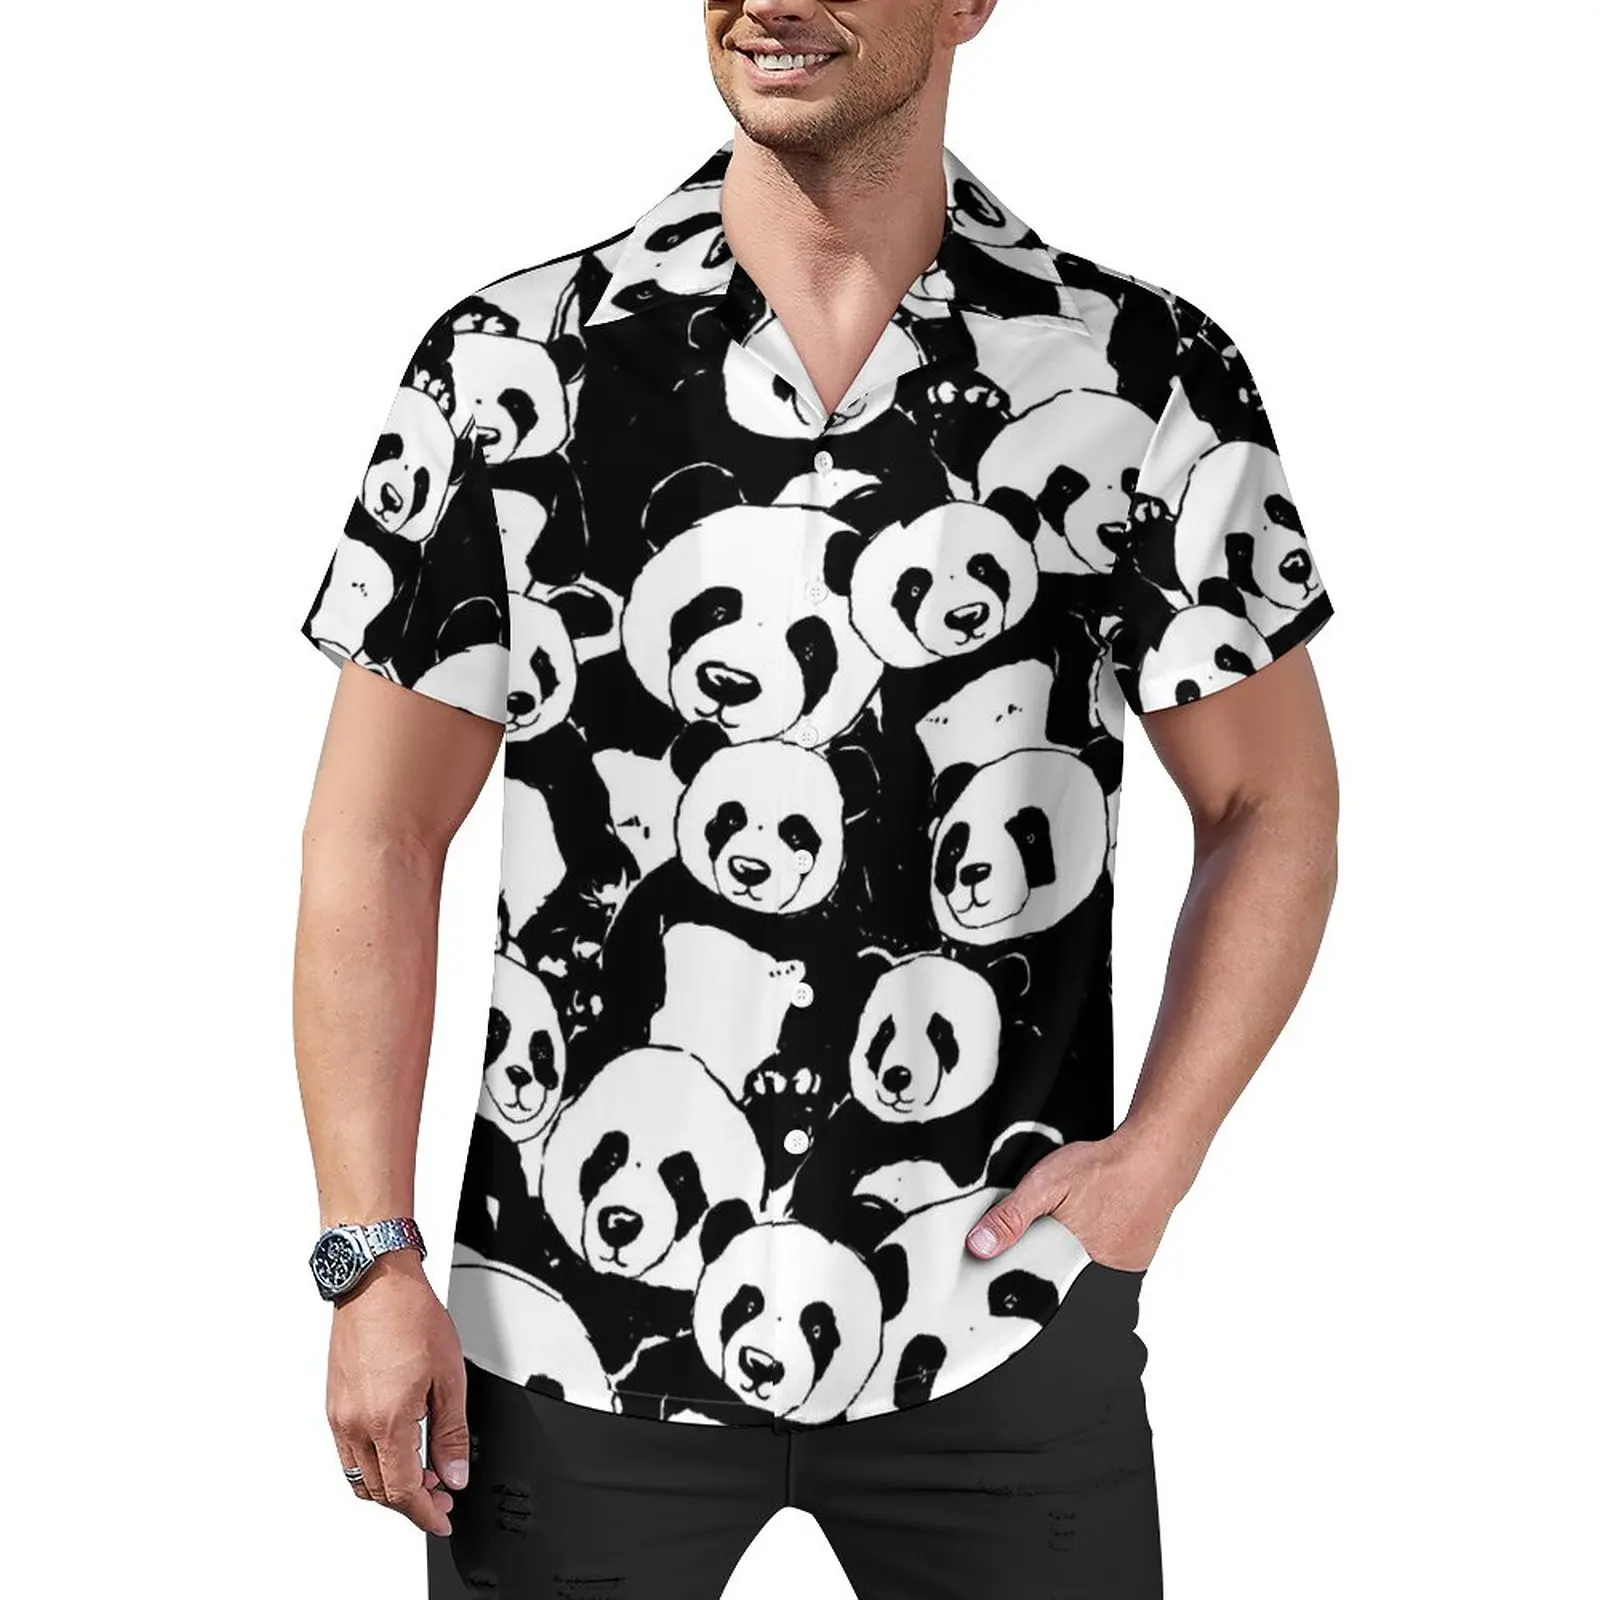 

Черно-белая Повседневная рубашка с принтом панды, забавная Свободная рубашка для отпуска с животным принтом, Гавайские блузки, дизайнерские топы большого размера с коротким рукавом